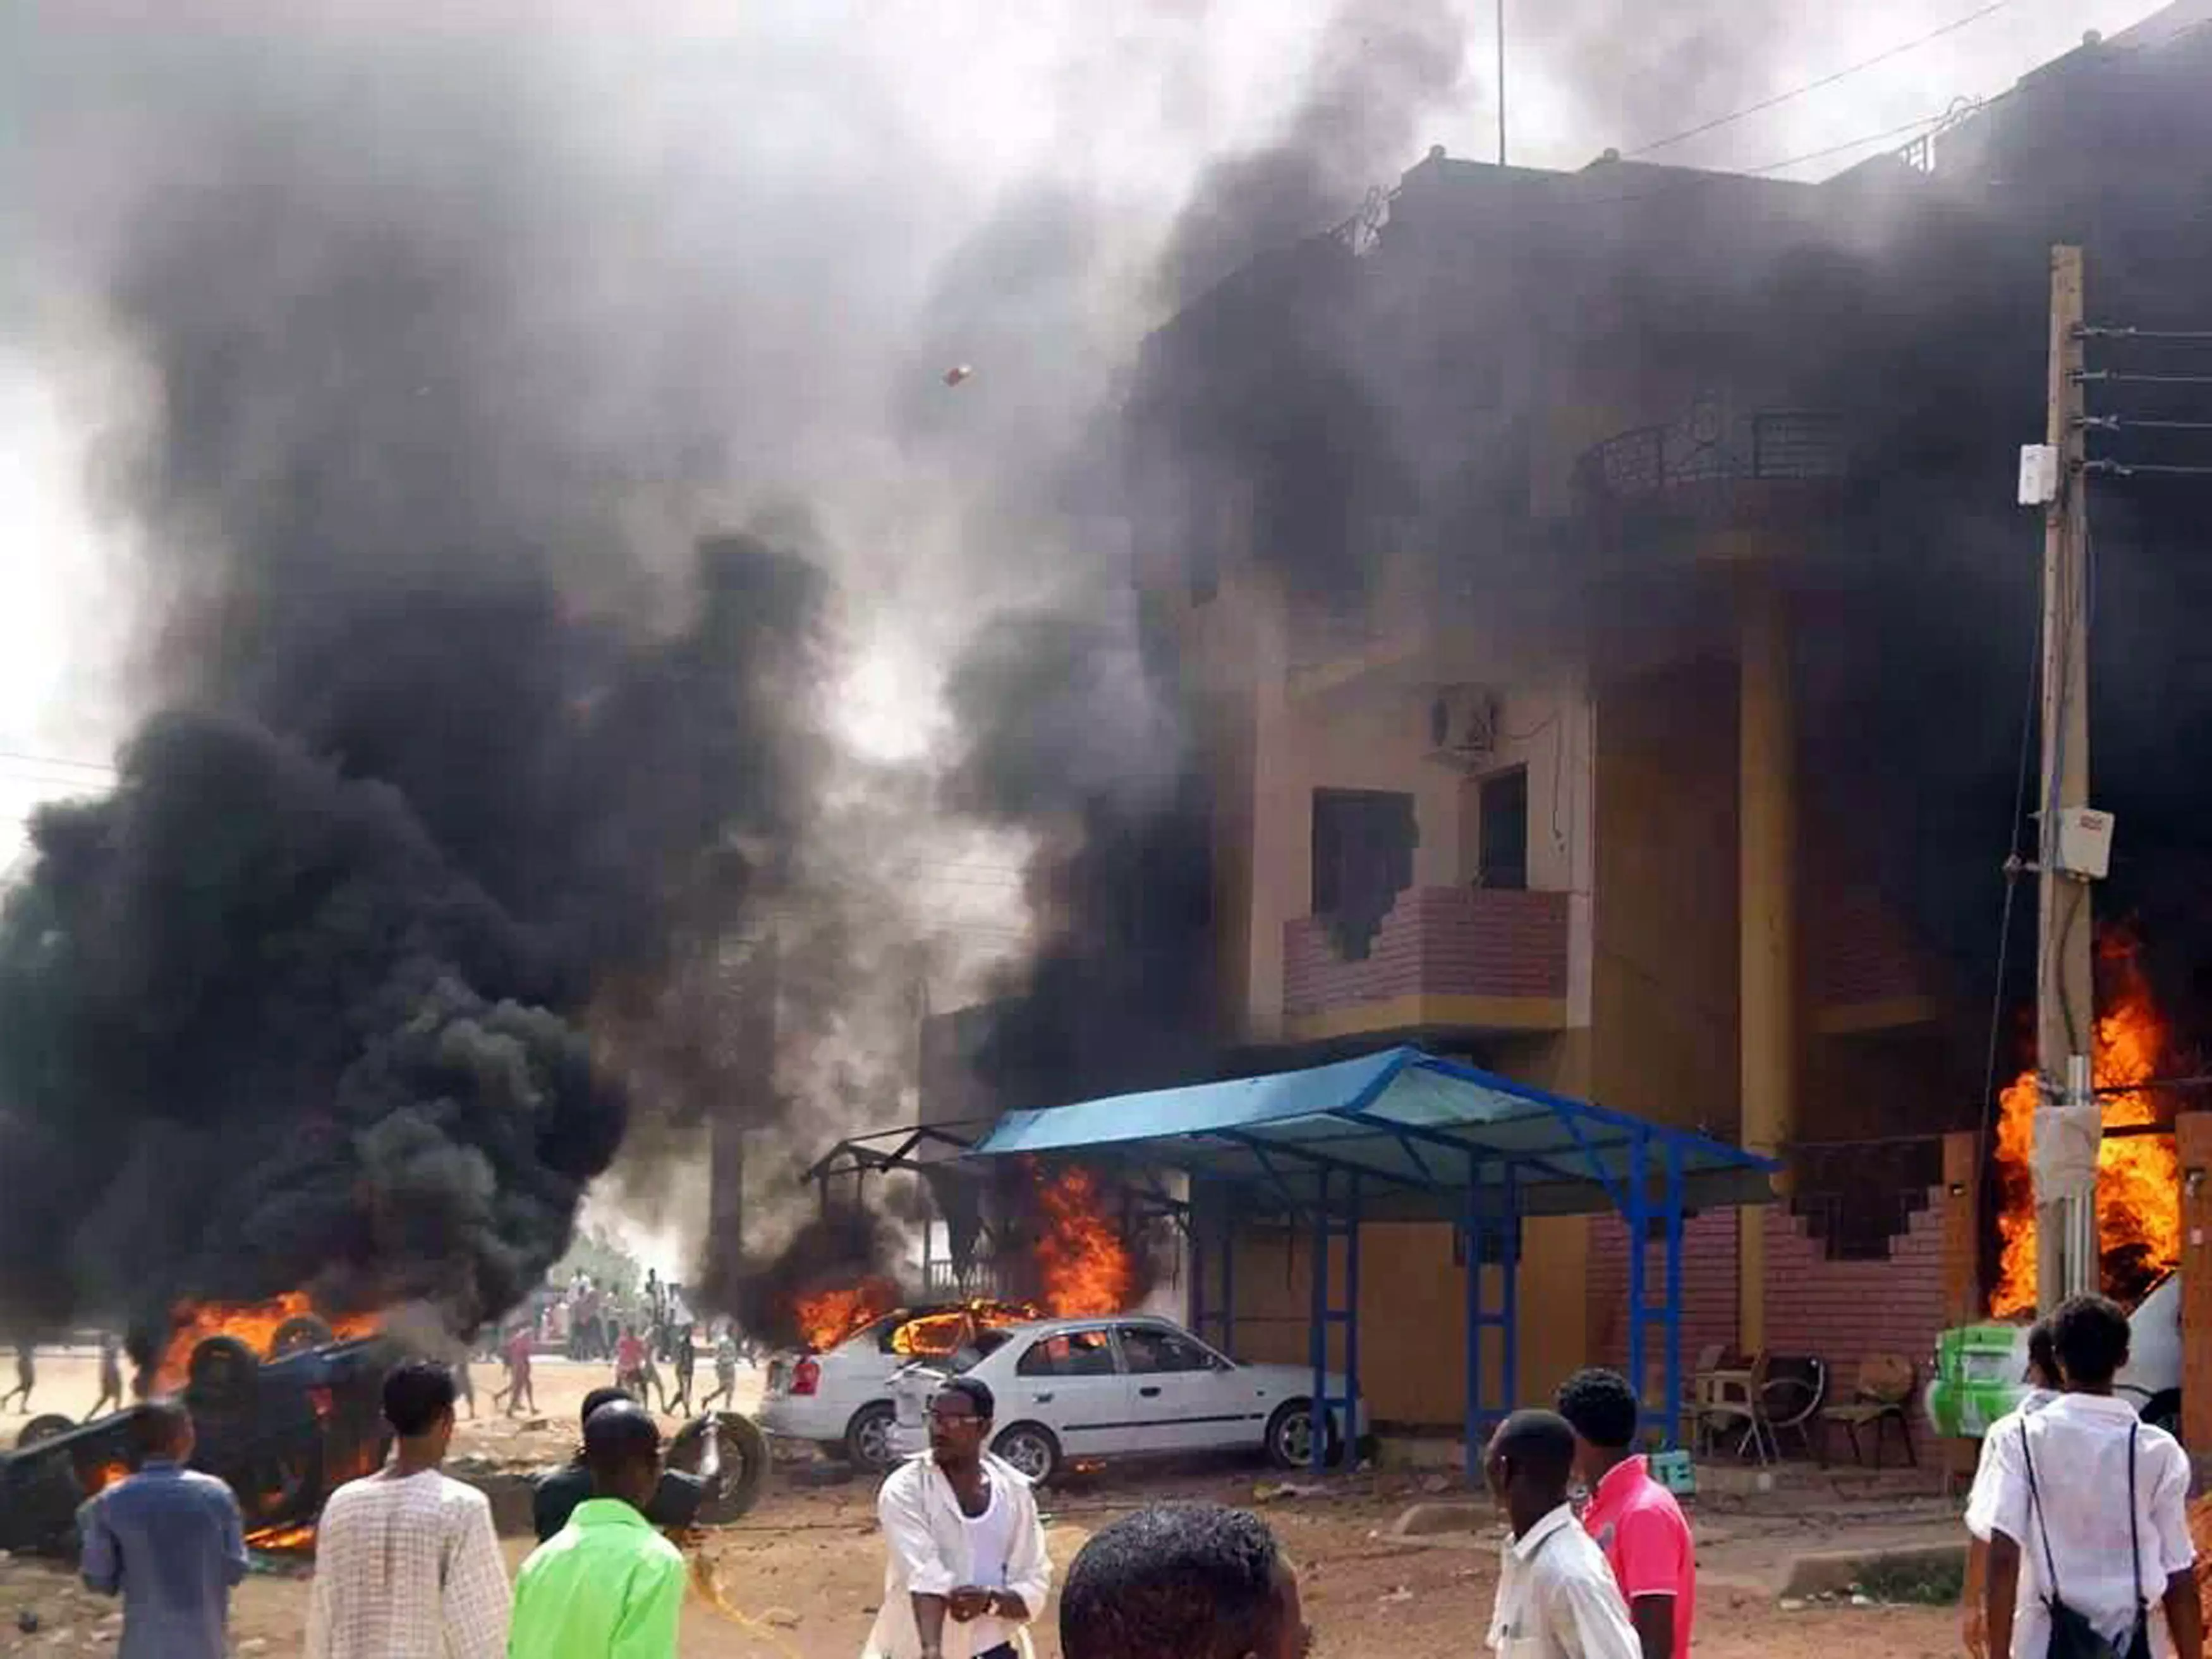 שר ההסברה הסודאני: "הנתונים לגבי ההרוגים אינם מדויקים". ההפגנות בחרטום בתחילת השבוע